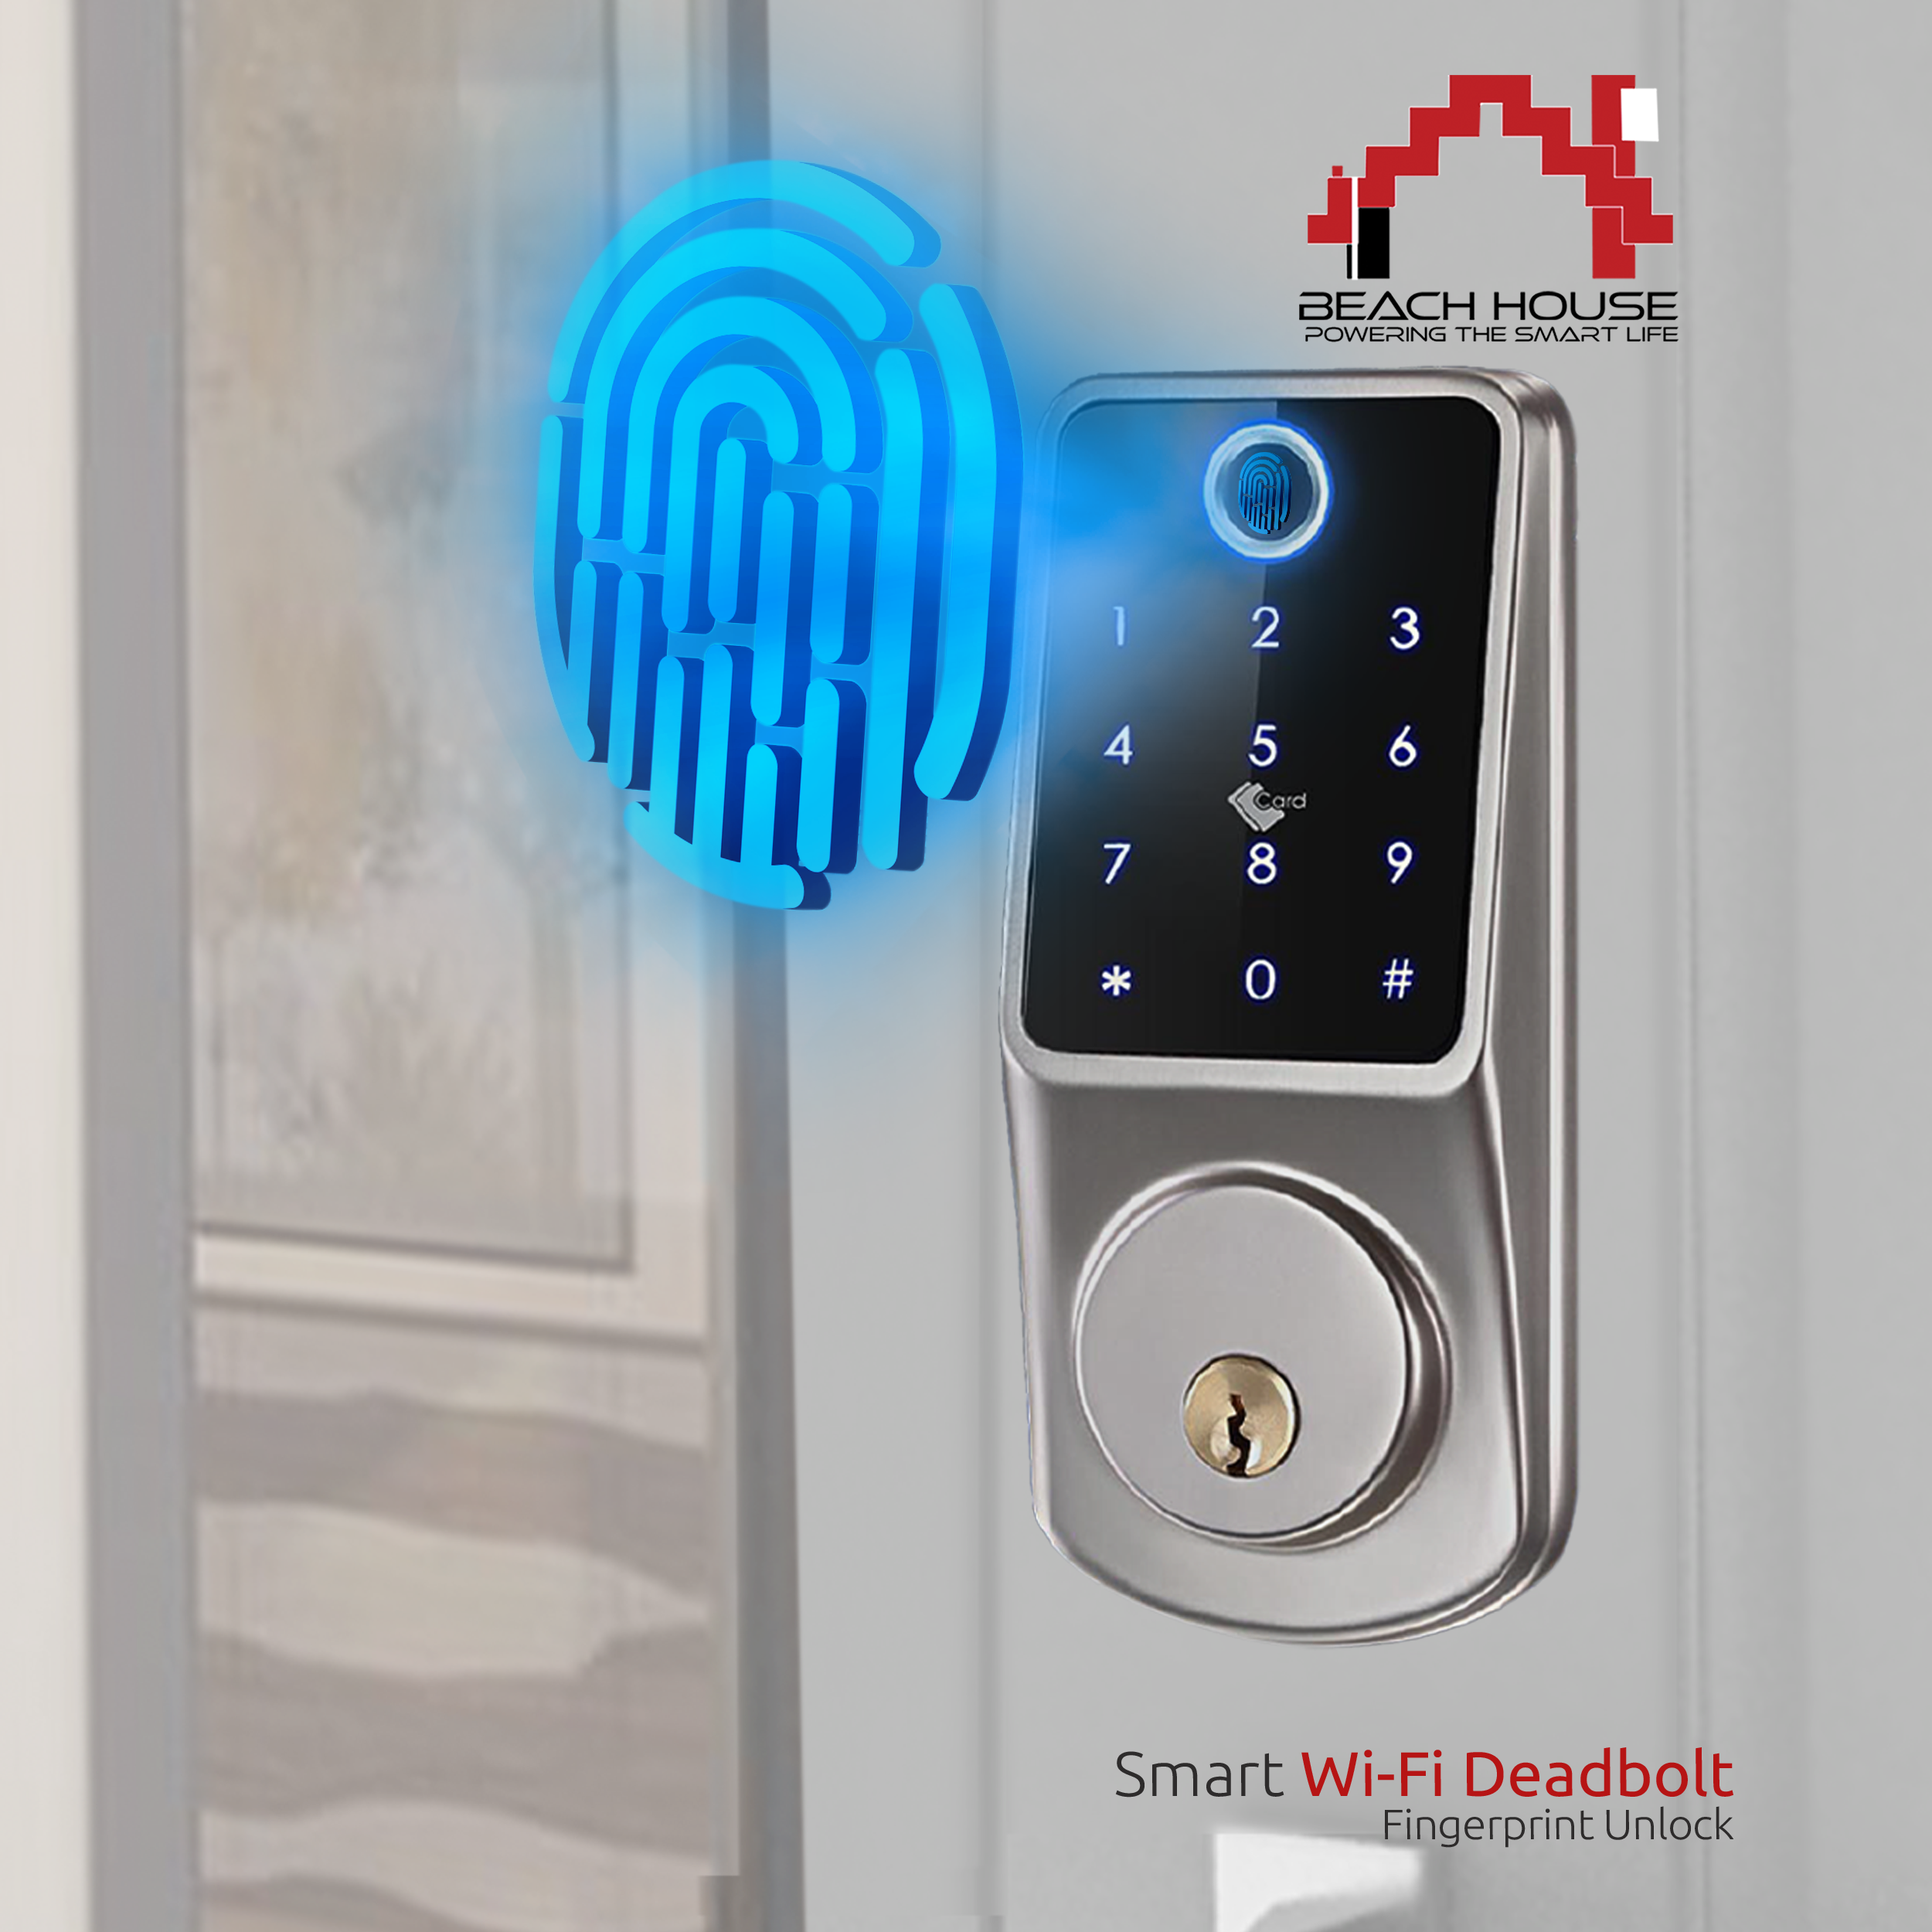 Smart Deadbolt - Fingerprint Unlock